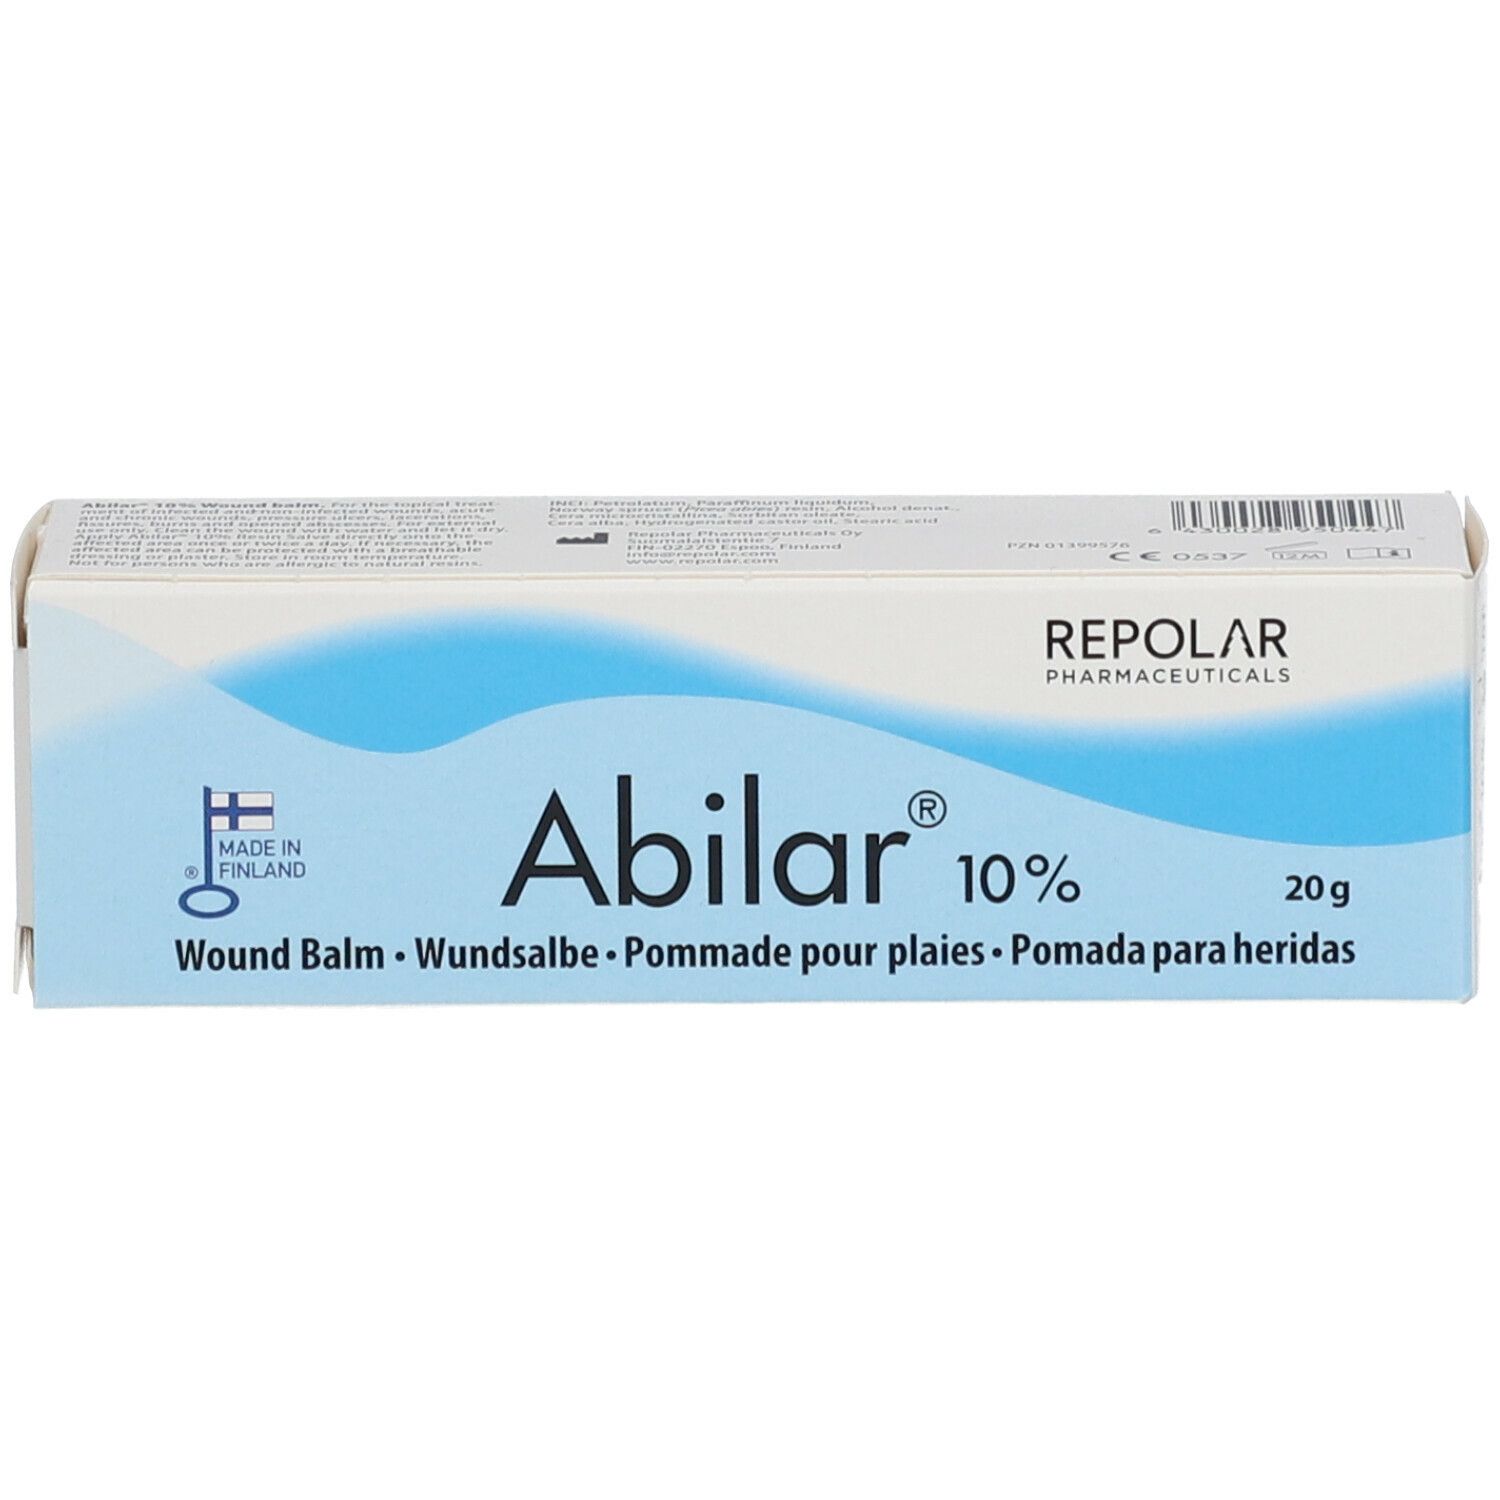 Abilar® 10% harzhältige Wundsalbe